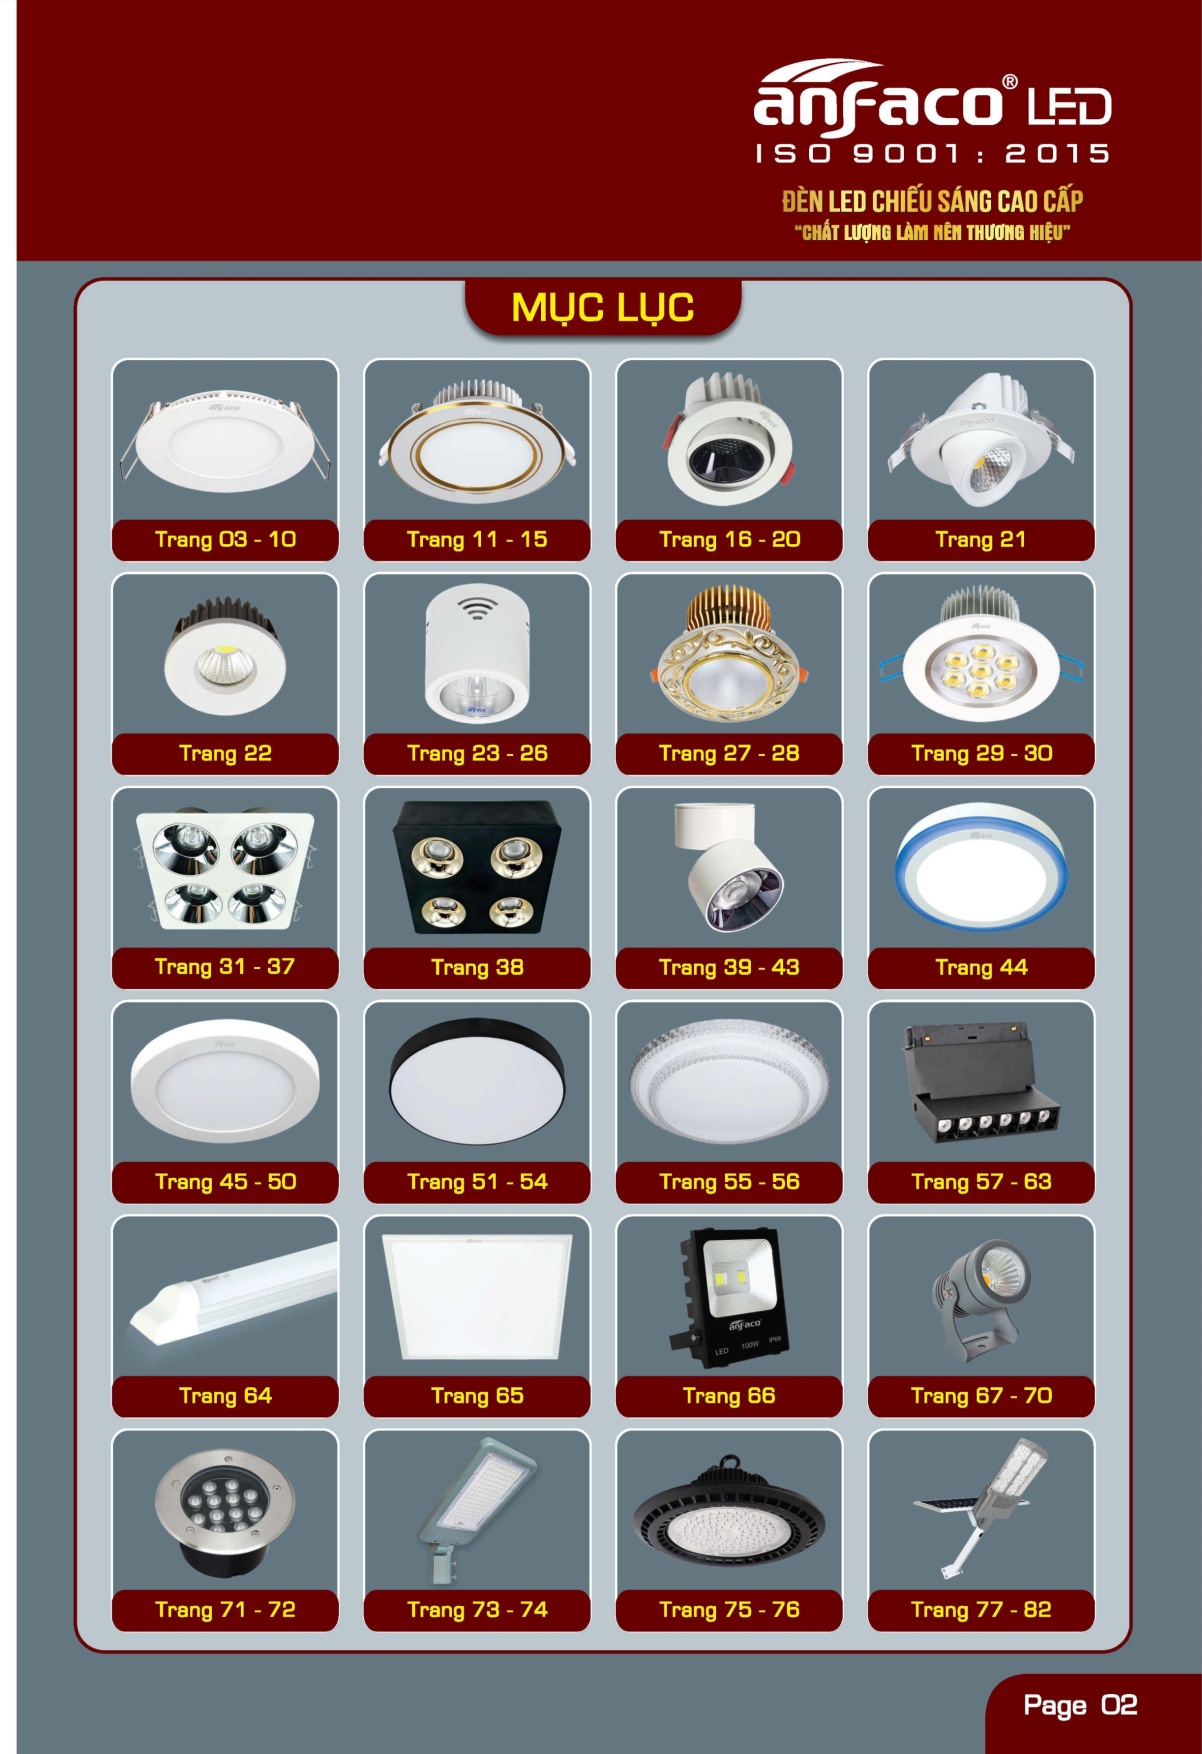 anfaco - Mua đèn Led loại nào tốt? Top những thương hiệu đèn led nổi tiếng tại Việt Nam.